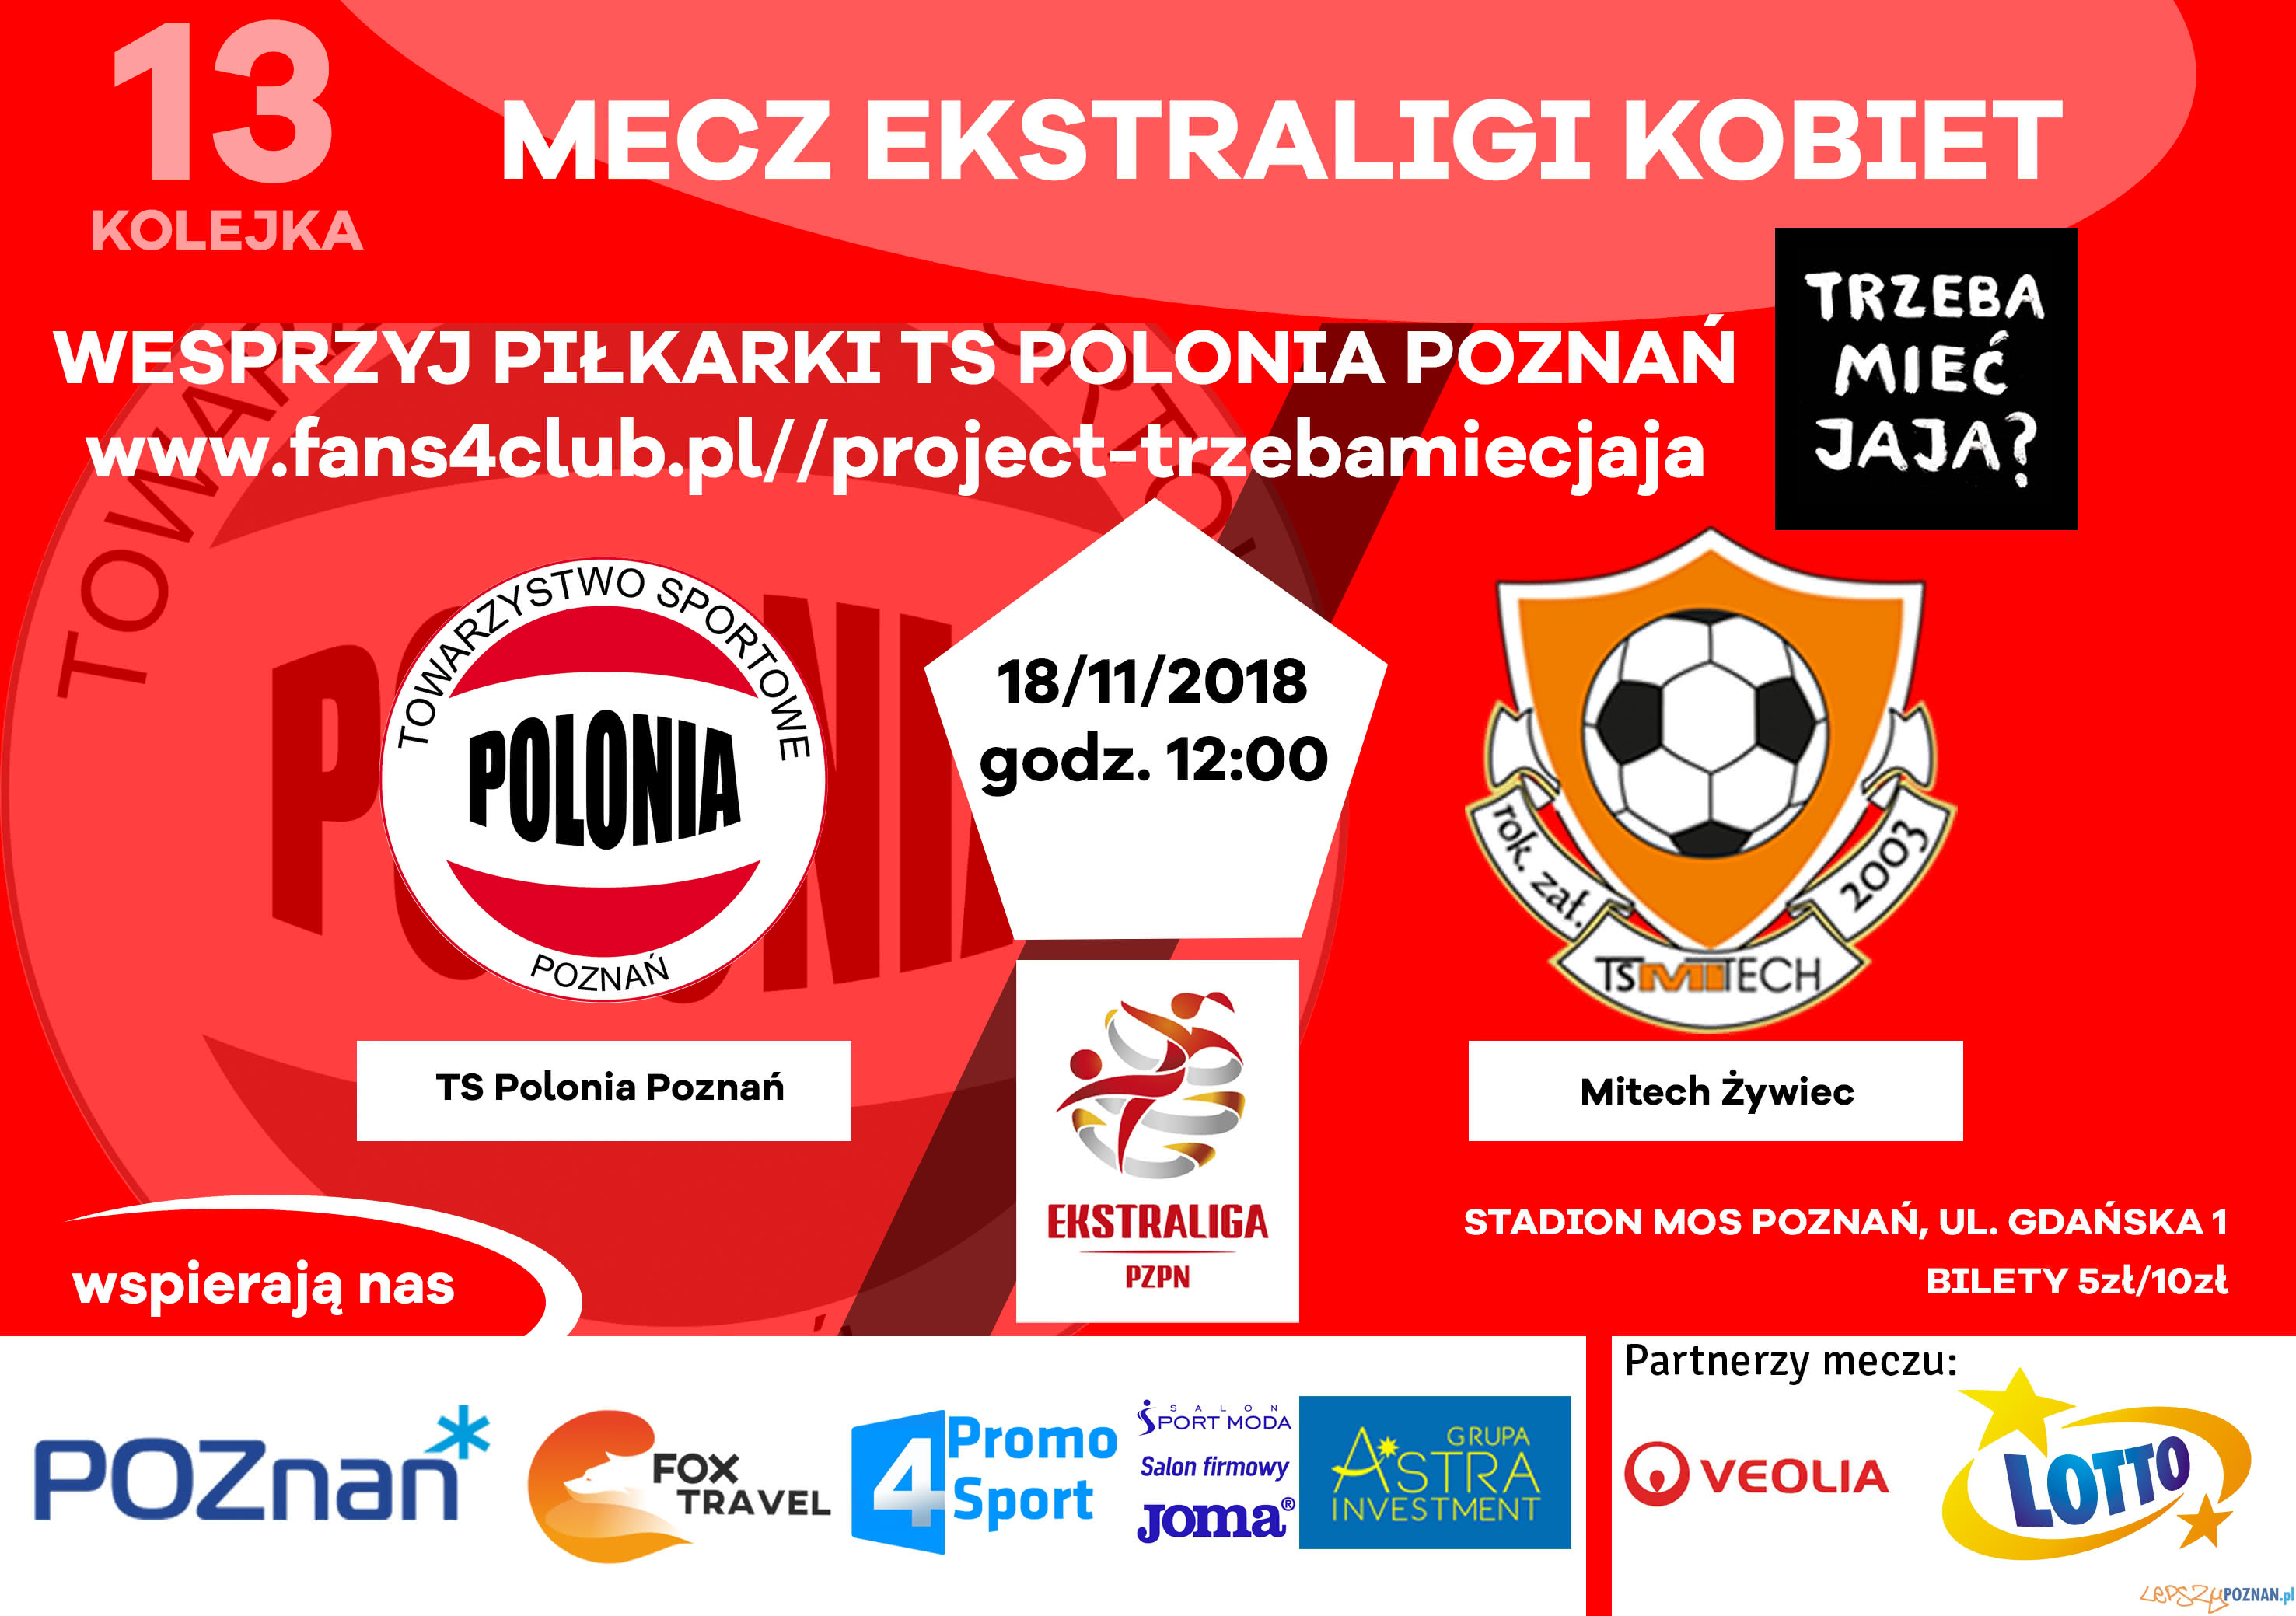 Polonia Poznań - plakat meczowy  Foto: materiały prasowe